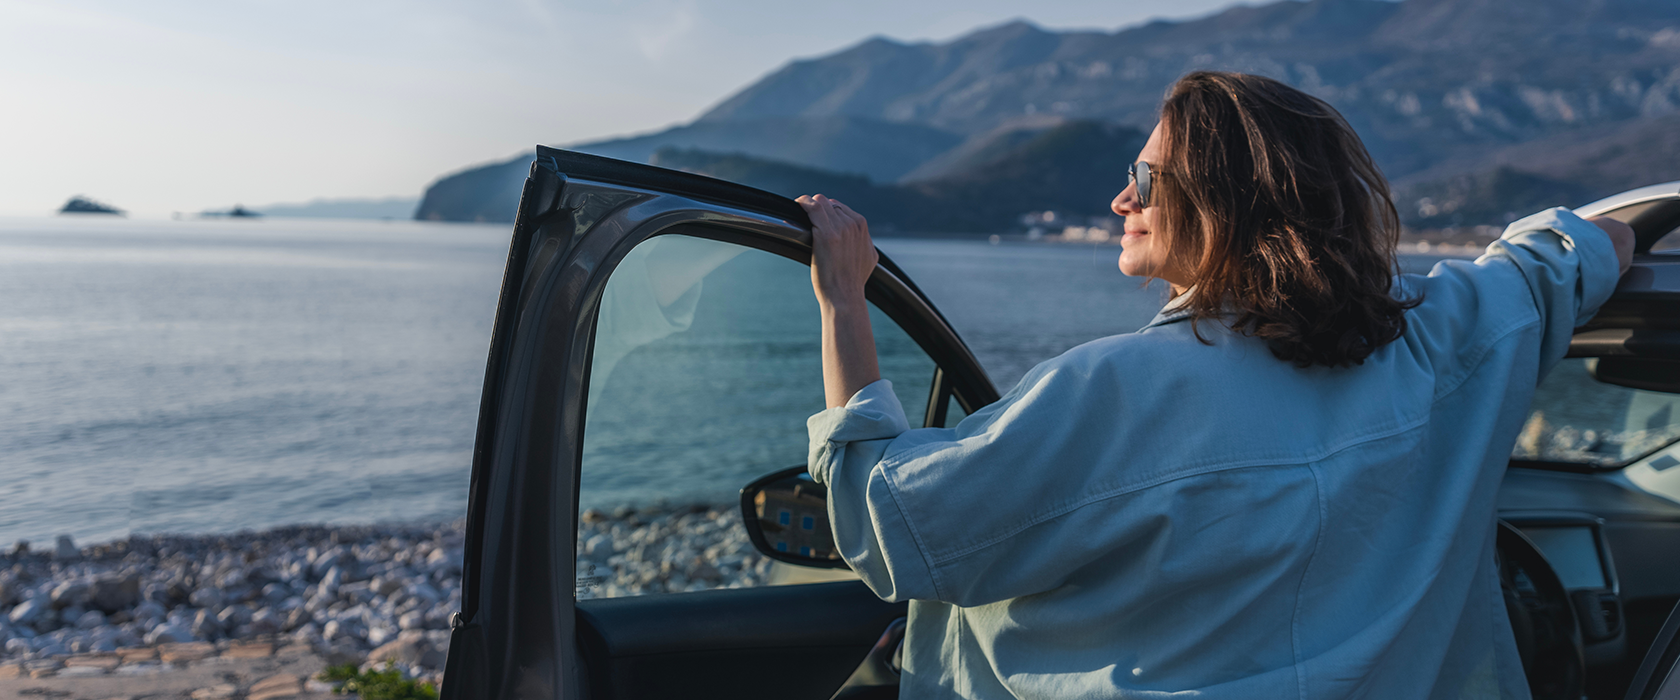 Eine Frau mit Sonnenbrille steht mit dem Rücken zur Kamera an einer offenen Autotür und guckt auf ein Gewässer